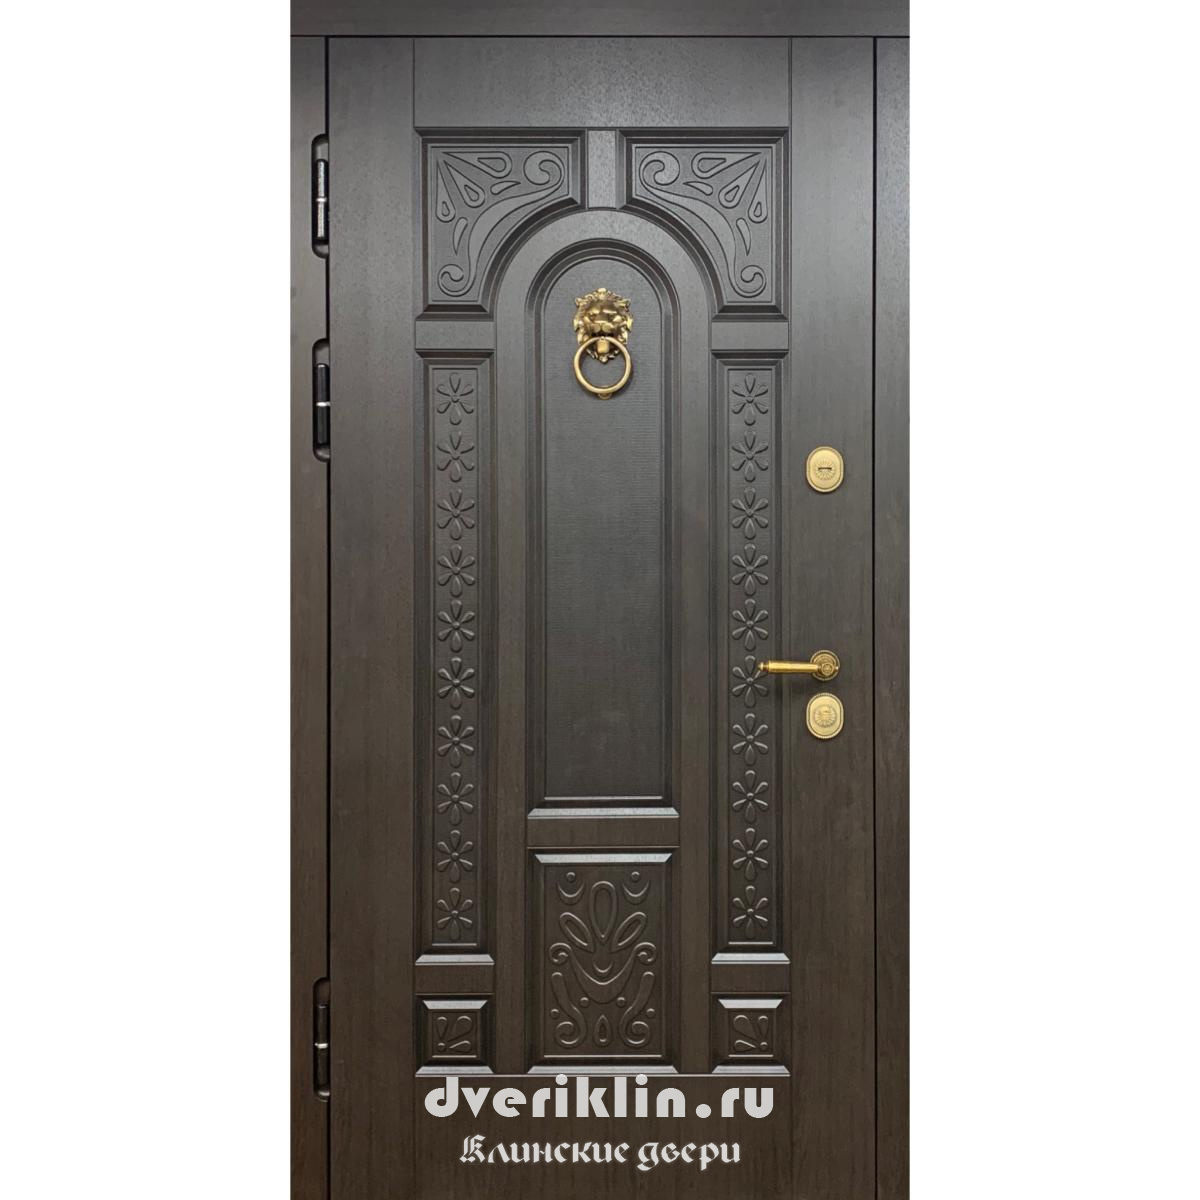 Дверь в коттедж MKD-16 (В коттедж)